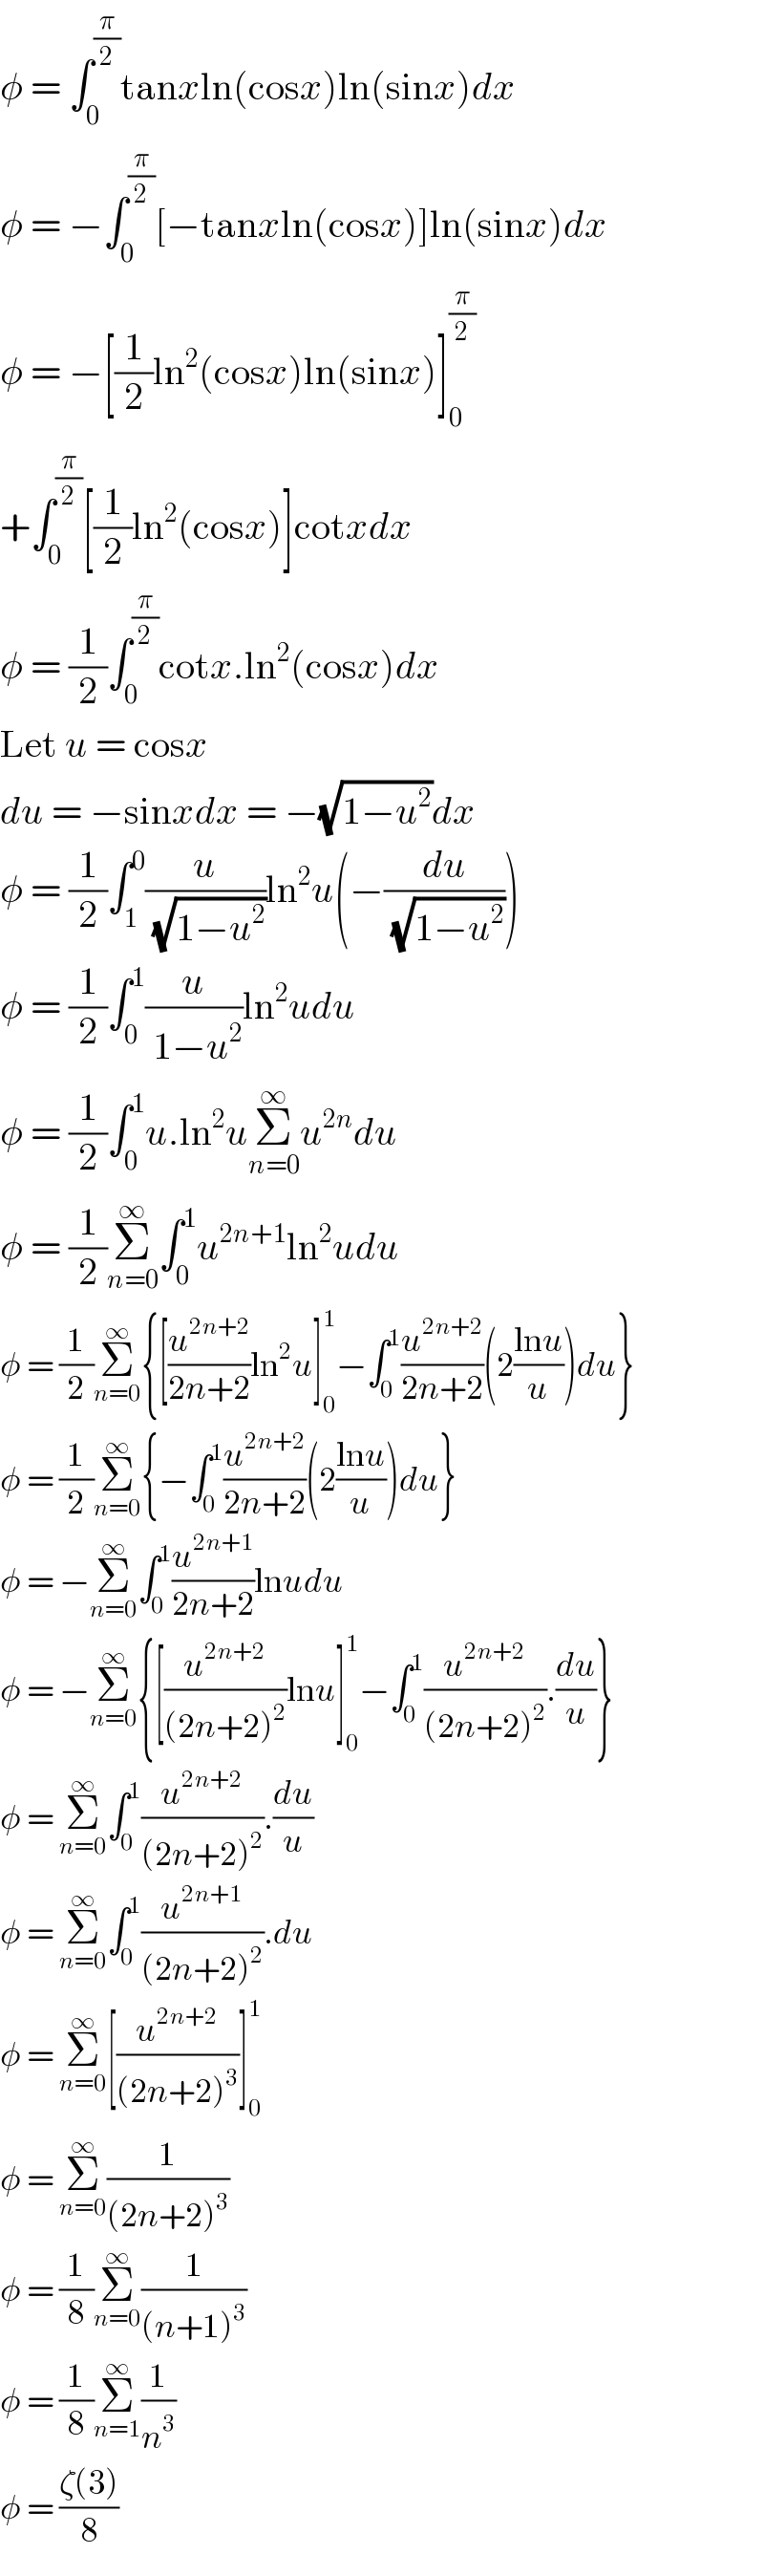 φ = ∫_0 ^(π/2) tanxln(cosx)ln(sinx)dx  φ = −∫_0 ^(π/2) [−tanxln(cosx)]ln(sinx)dx  φ = −[(1/2)ln^2 (cosx)ln(sinx)]_0 ^(π/2)   +∫_0 ^(π/2) [(1/2)ln^2 (cosx)]cotxdx  φ = (1/2)∫_0 ^(π/2) cotx.ln^2 (cosx)dx  Let u = cosx  du = −sinxdx = −(√(1−u^2 ))dx  φ = (1/2)∫_1 ^0 (u/( (√(1−u^2 ))))ln^2 u(−(du/( (√(1−u^2 )))))  φ = (1/2)∫_0 ^1 (u/( 1−u^2 ))ln^2 udu  φ = (1/2)∫_0 ^1 u.ln^2 uΣ_(n=0) ^∞ u^(2n) du  φ = (1/2)Σ_(n=0) ^∞ ∫_0 ^1 u^(2n+1) ln^2 udu  φ = (1/2)Σ_(n=0) ^∞ {[(u^(2n+2) /(2n+2))ln^2 u]_0 ^1 −∫_0 ^1 (u^(2n+2) /(2n+2))(2((lnu)/u))du}  φ = (1/2)Σ_(n=0) ^∞ {−∫_0 ^1 (u^(2n+2) /(2n+2))(2((lnu)/u))du}  φ = −Σ_(n=0) ^∞ ∫_0 ^1 (u^(2n+1) /(2n+2))lnudu  φ = −Σ_(n=0) ^∞ {[(u^(2n+2) /((2n+2)^2 ))lnu]_0 ^1 −∫_0 ^1 (u^(2n+2) /((2n+2)^2 )).(du/u)}  φ = Σ_(n=0) ^∞ ∫_0 ^1 (u^(2n+2) /((2n+2)^2 )).(du/u)  φ = Σ_(n=0) ^∞ ∫_0 ^1 (u^(2n+1) /((2n+2)^2 )).du  φ = Σ_(n=0) ^∞ [(u^(2n+2) /((2n+2)^3 ))]_0 ^1   φ = Σ_(n=0) ^∞ (1/((2n+2)^3 ))  φ = (1/8)Σ_(n=0) ^∞ (1/((n+1)^3 ))  φ = (1/8)Σ_(n=1) ^∞ (1/n^3 )  φ = ((ζ(3))/8)  